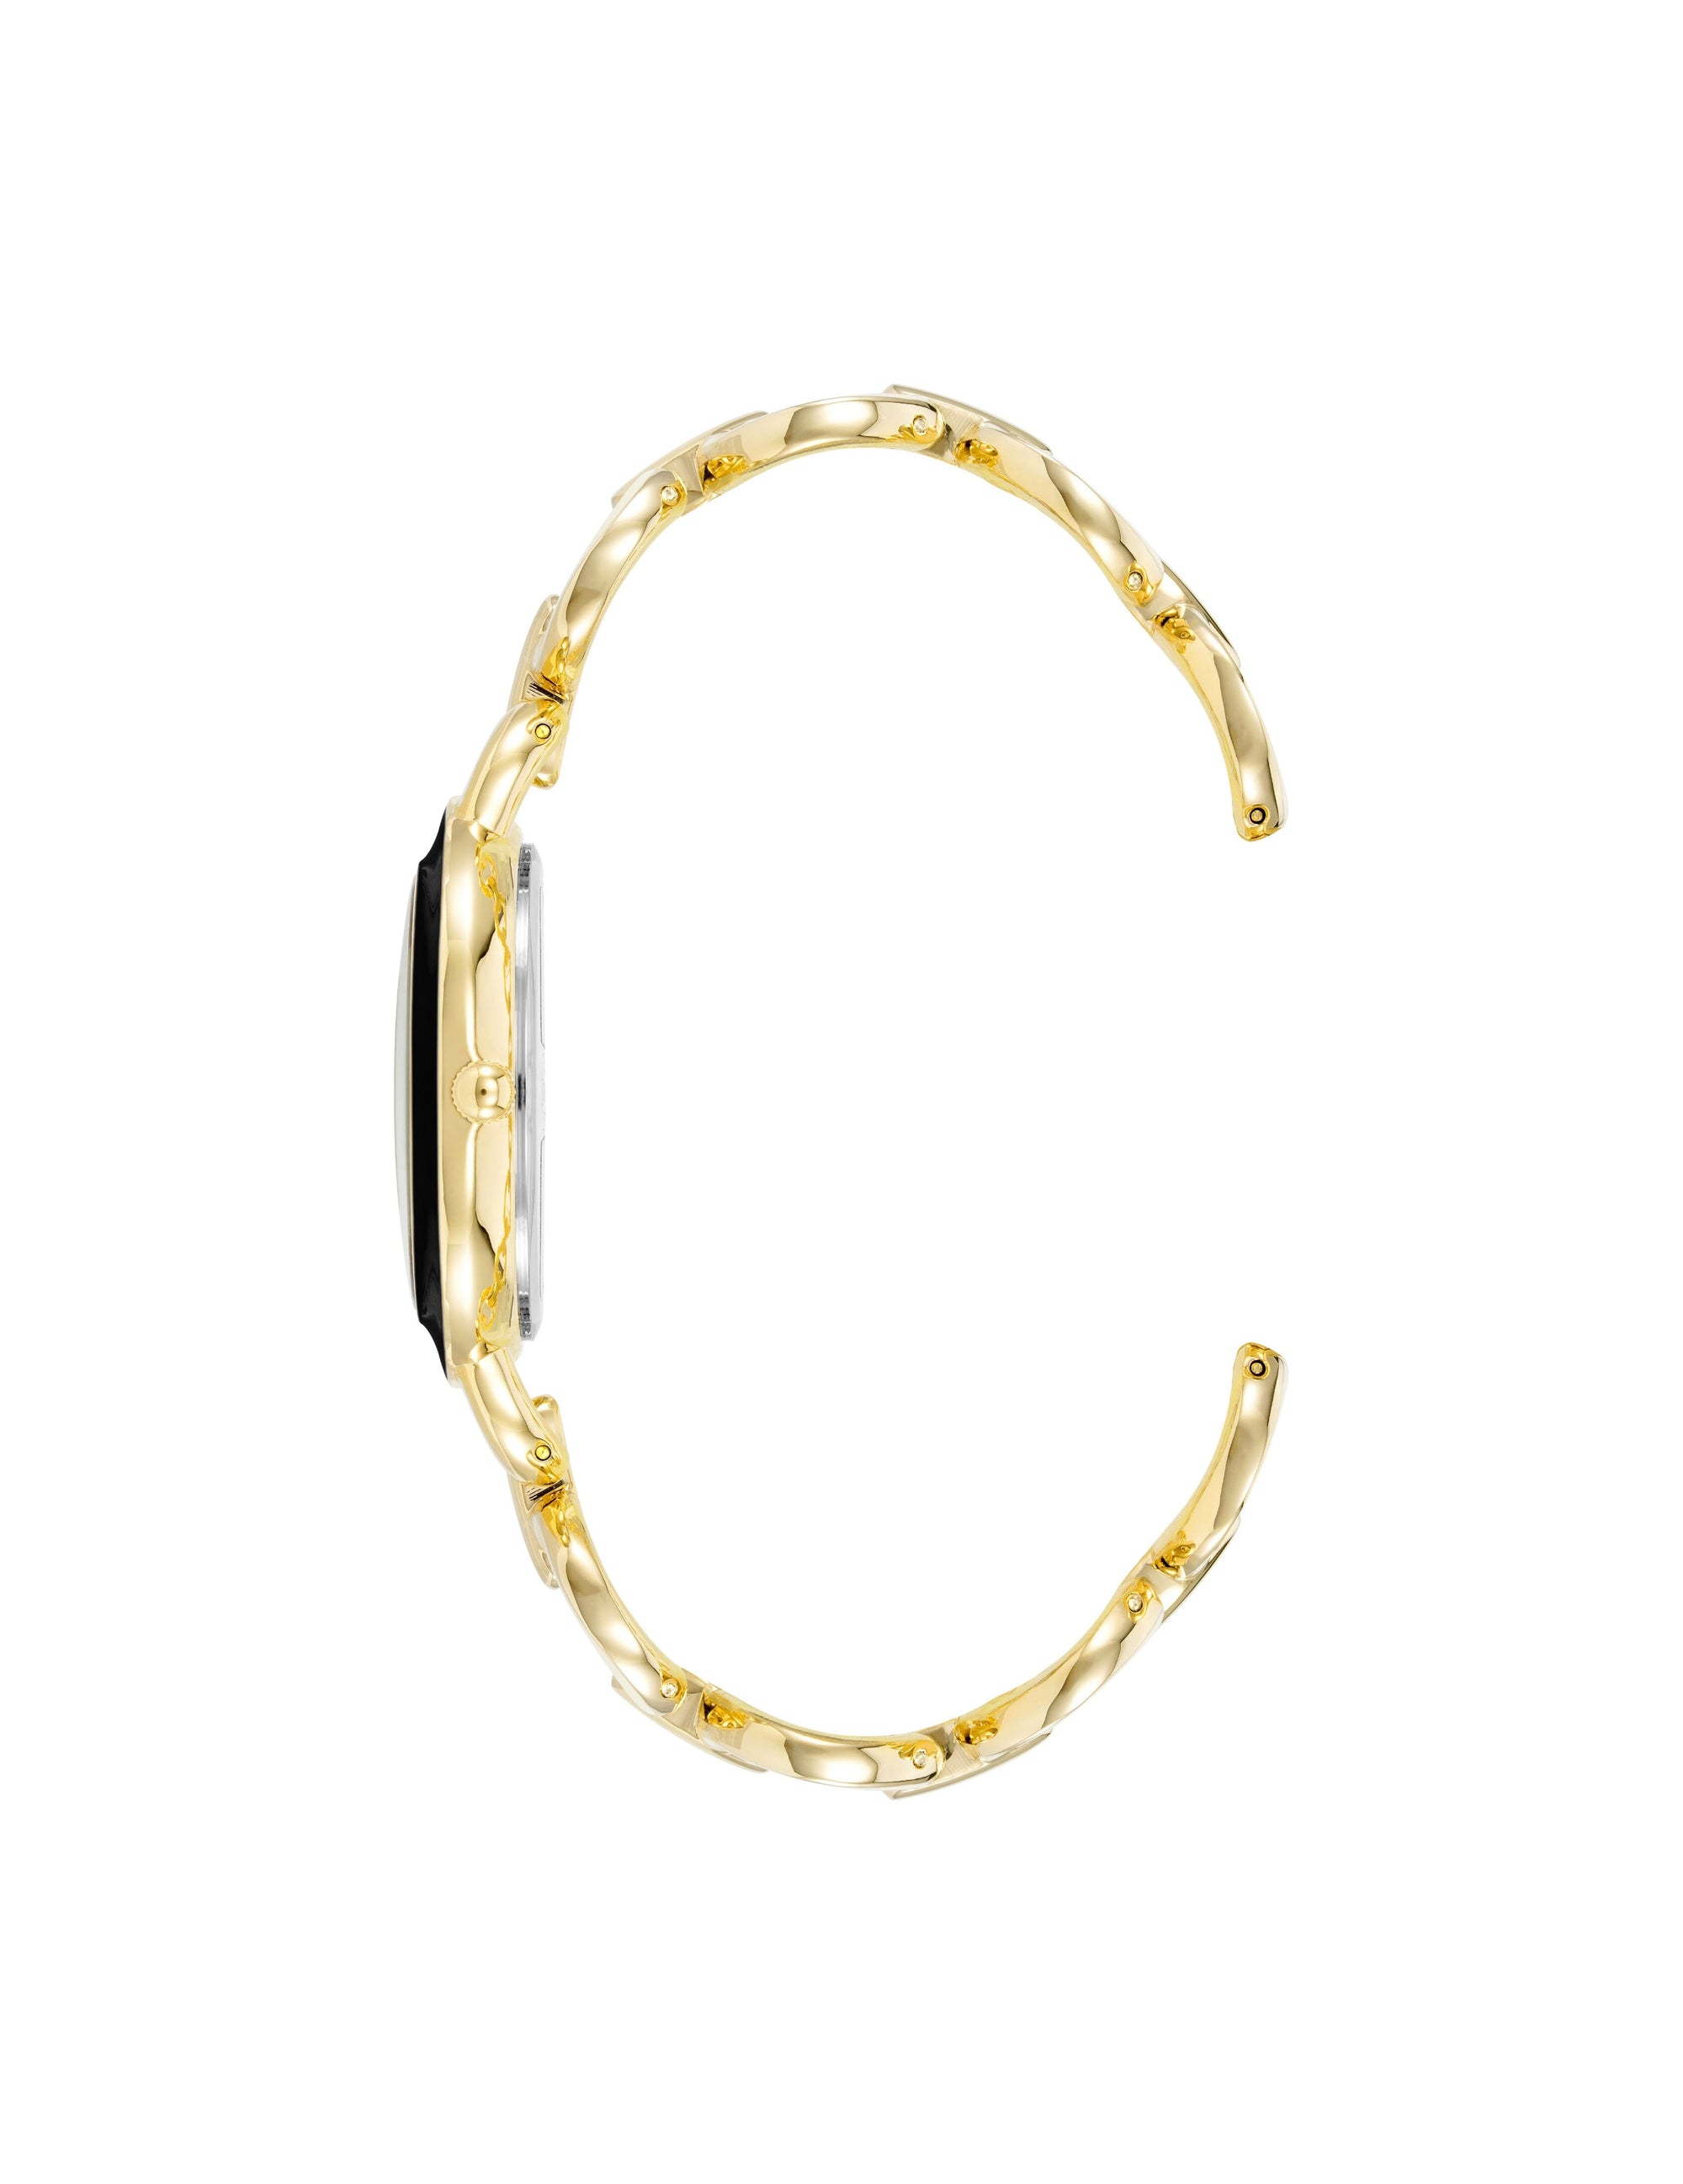 Anne Klein Black/ Gold Tone Boyfriend Circular Link Bracelet Watch Set